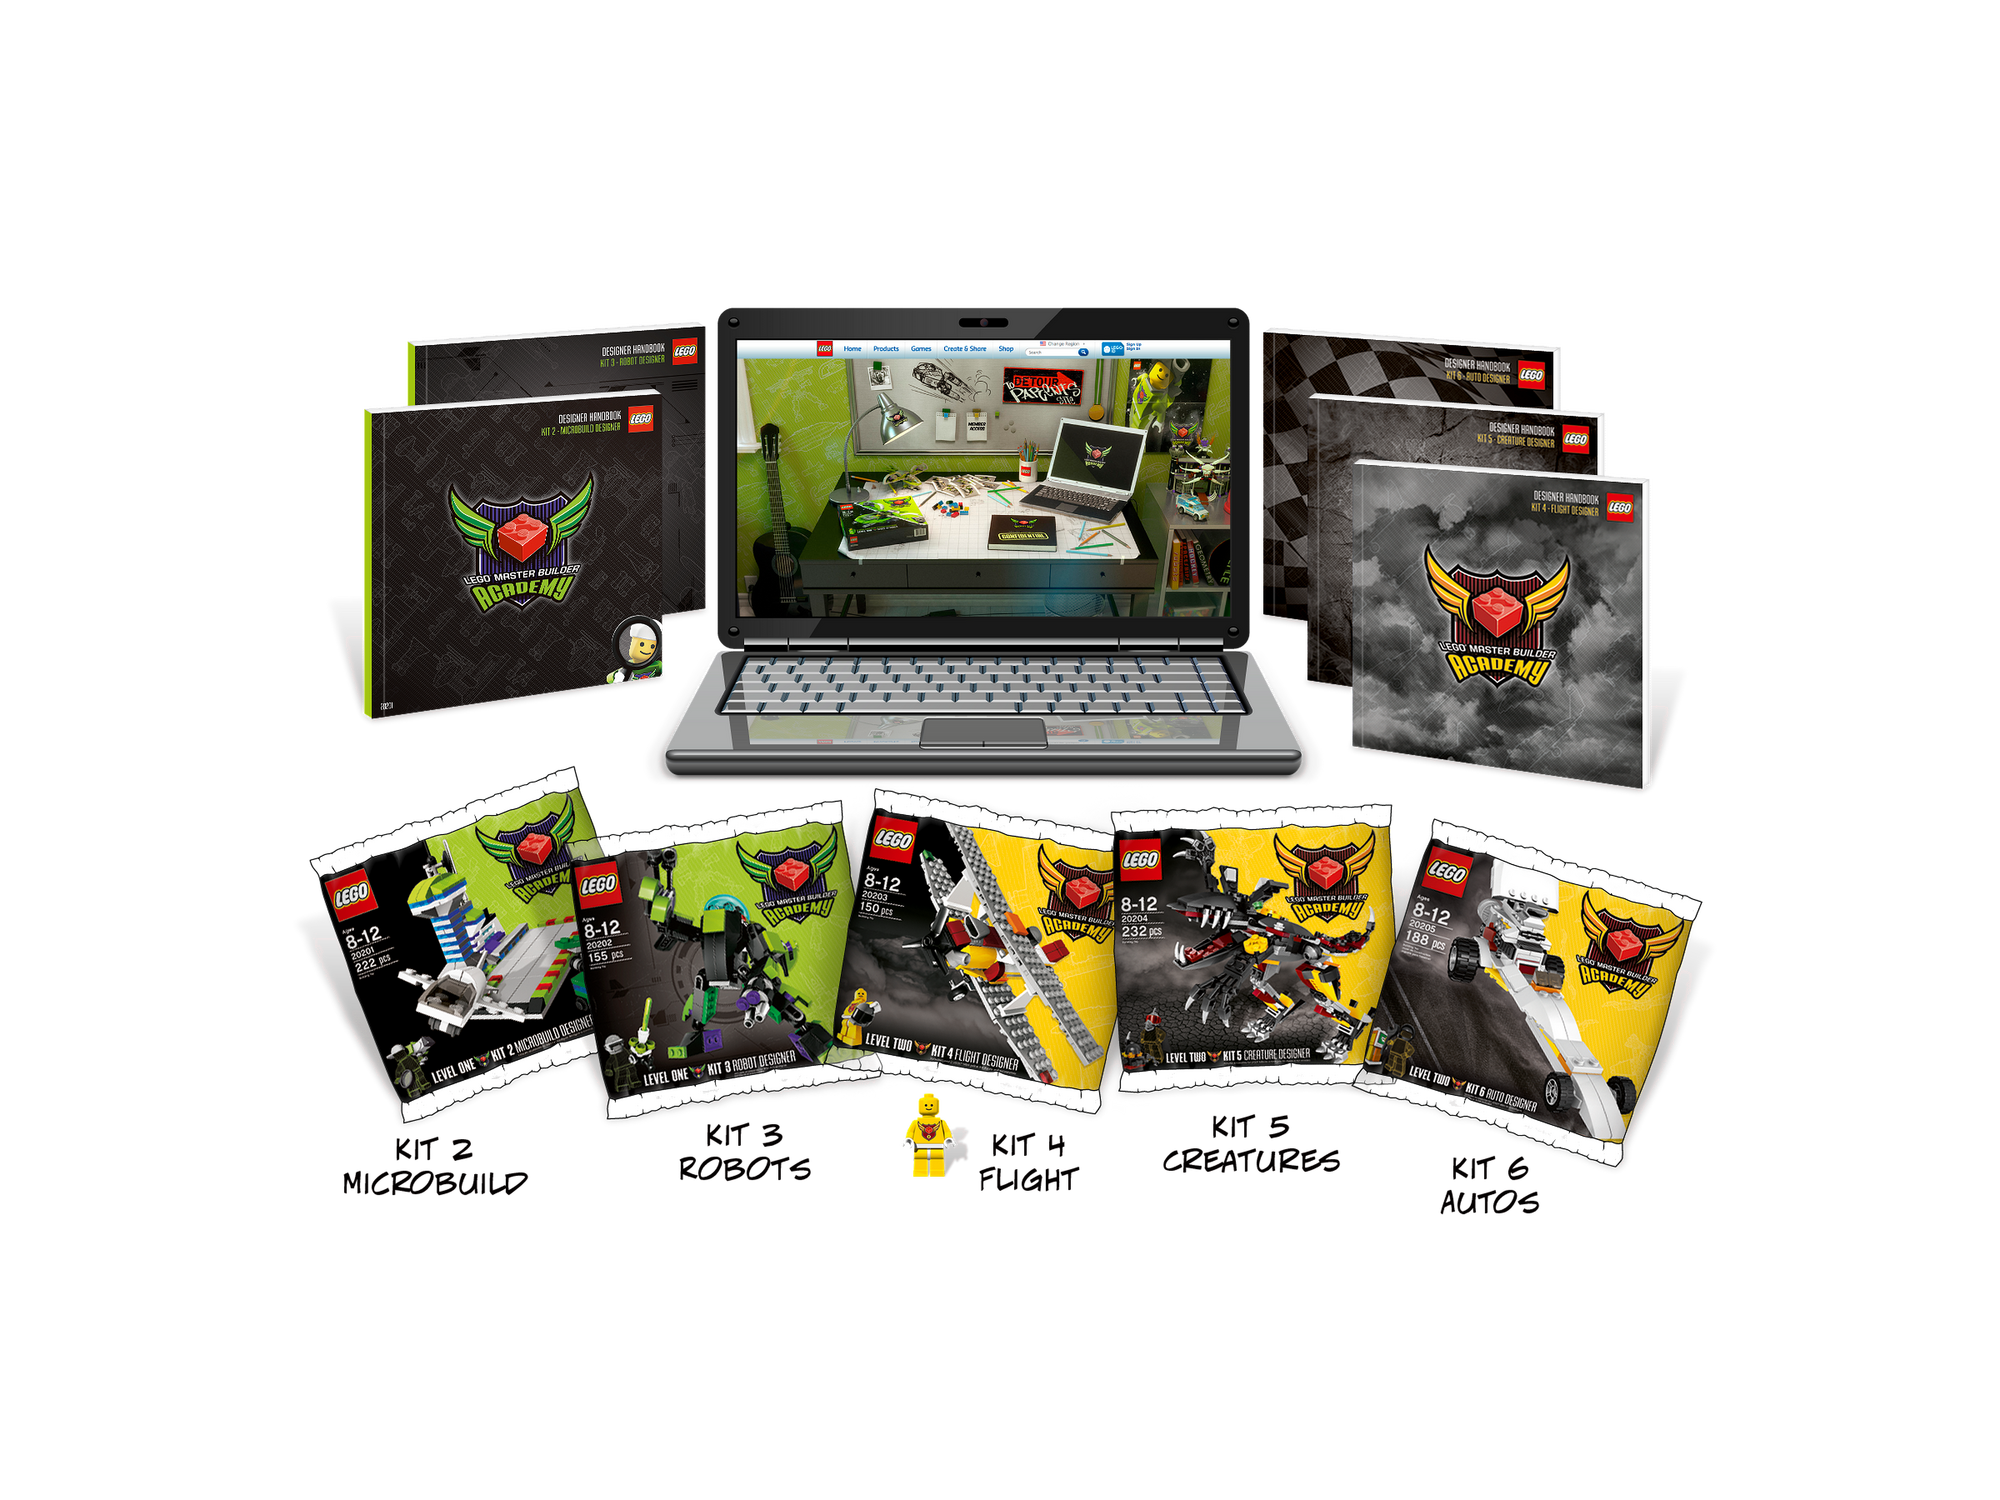 4659018 LEGO MBA Kits 2-6 Subscription | Brickipedia | Fandom powered by Wikia2000 x 1500